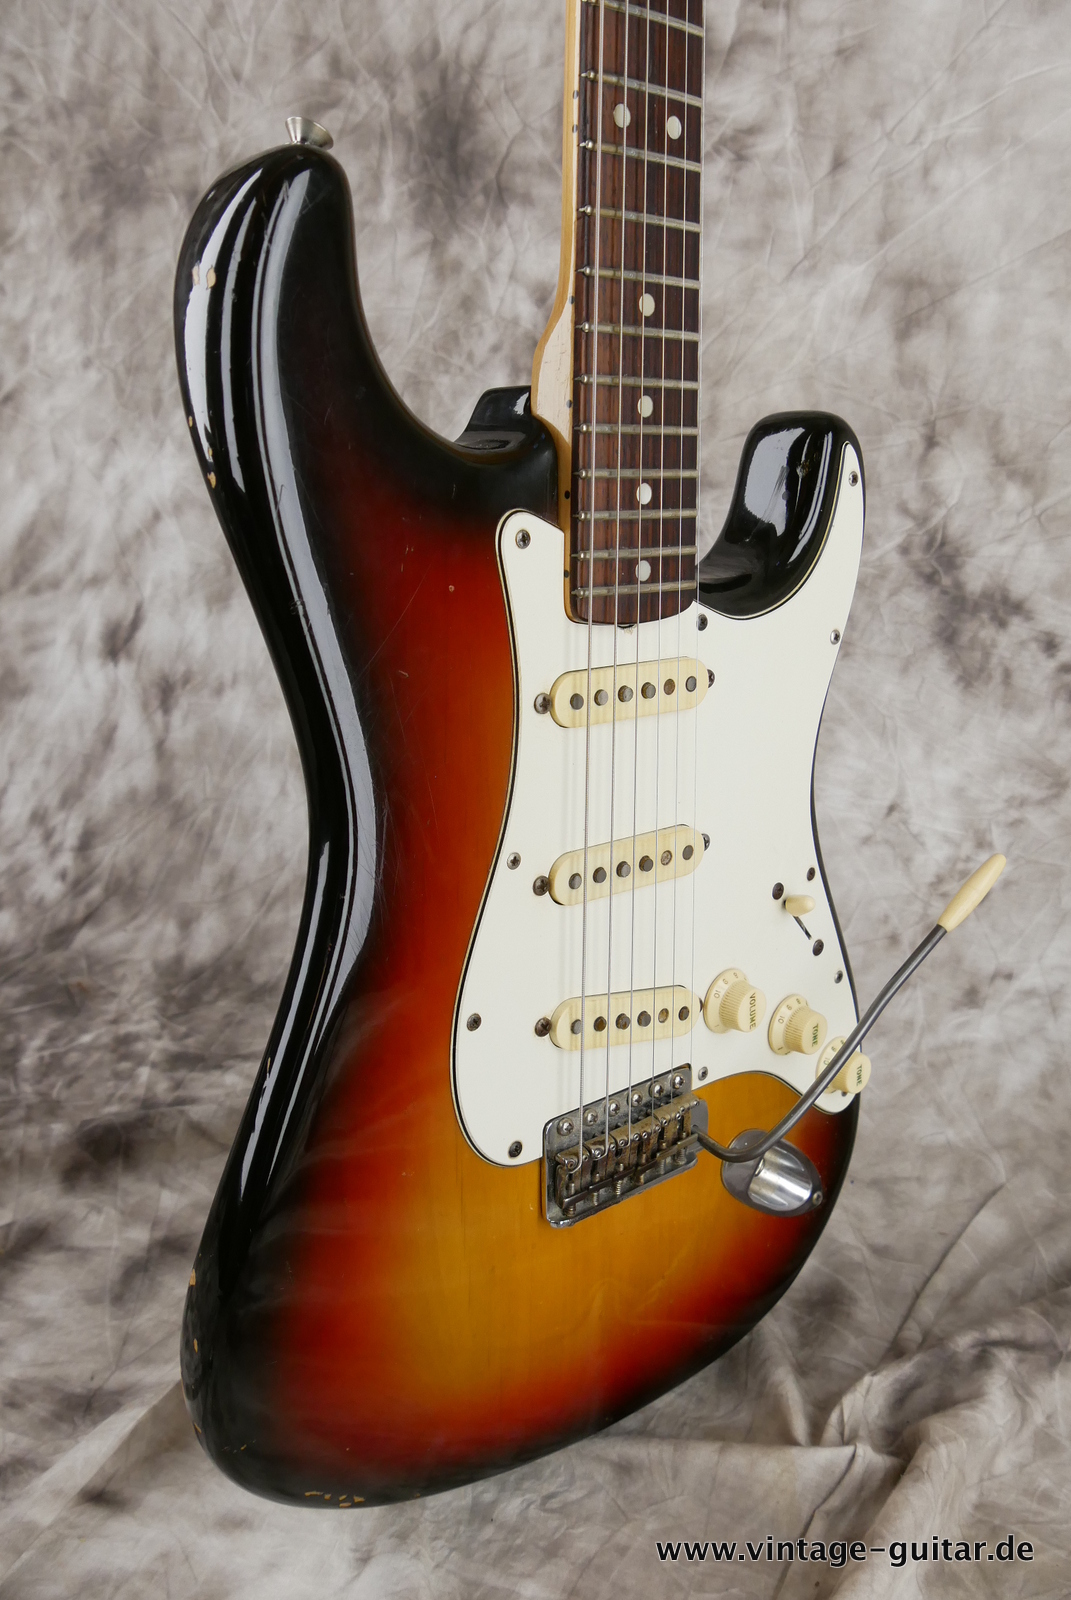 Fender-Stratocaster-1971-sunburst-4-hole-005.JPG